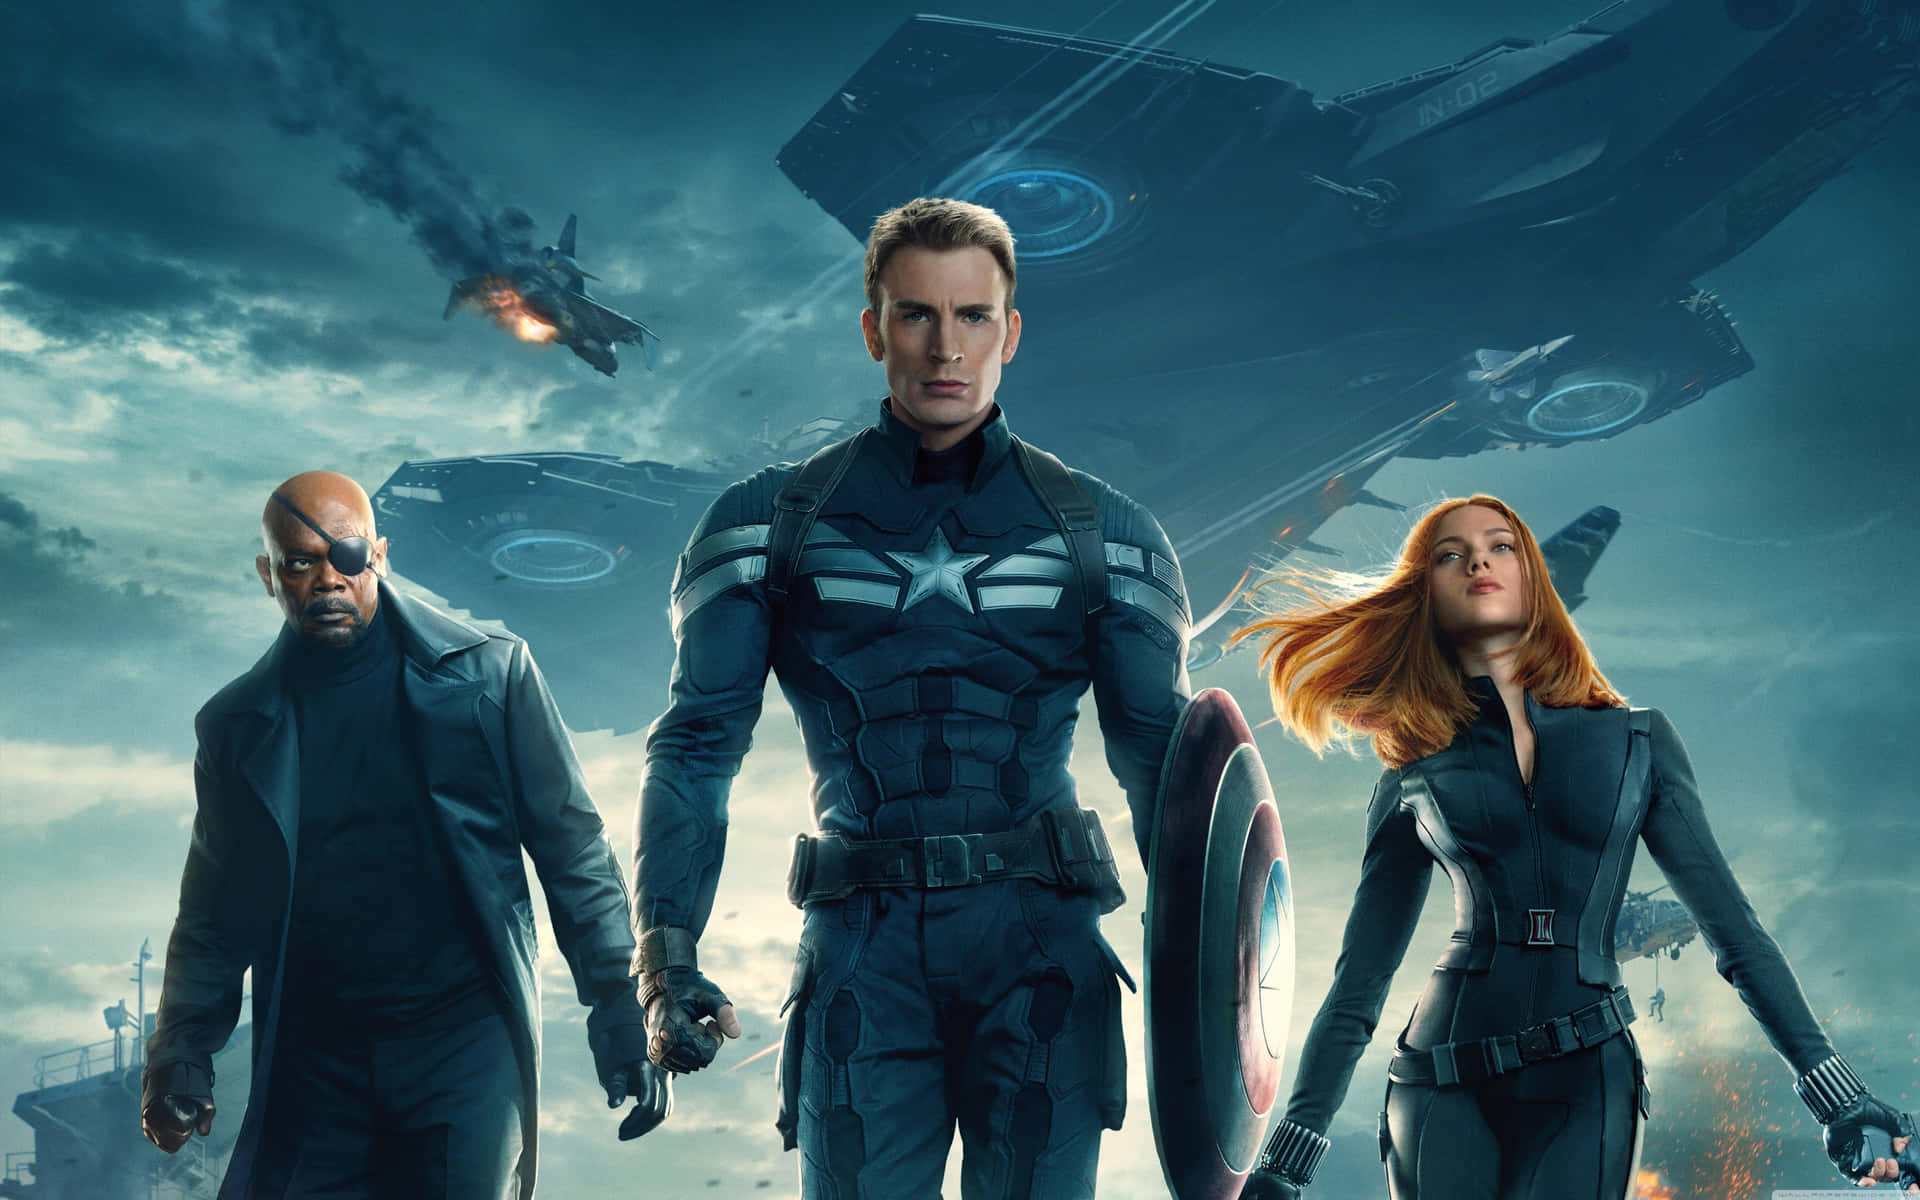 Captain America Movie Battleship Poster Wallpaper